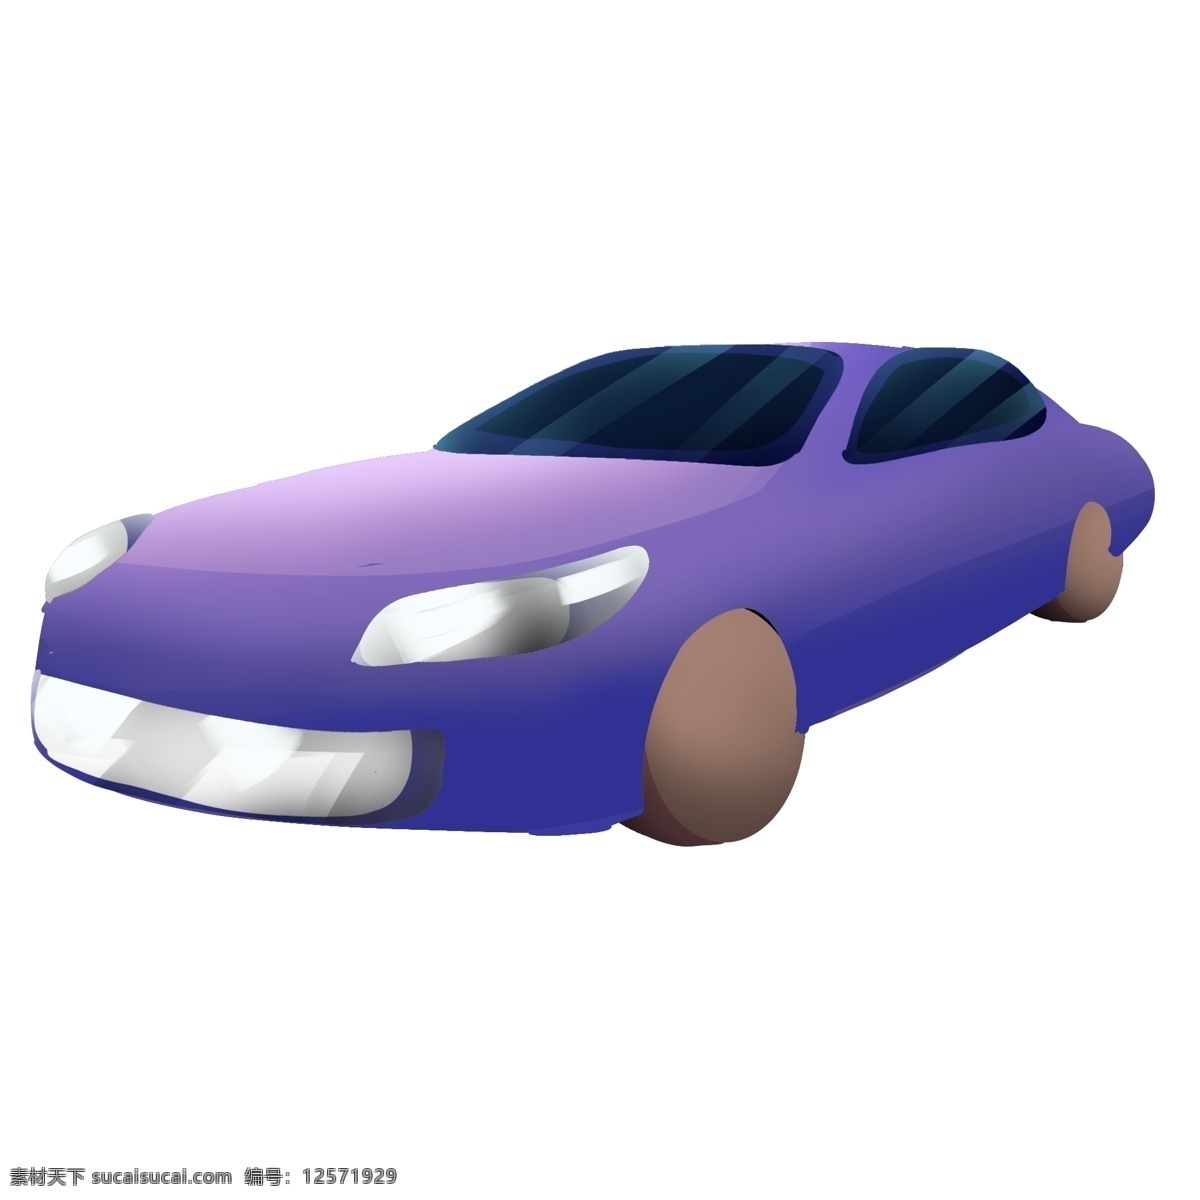 漂亮 紫色 跑车 插画 小轿车 紫色汽车 汽车 机动车 高档跑车 漂亮的跑车 紫色跑车插画